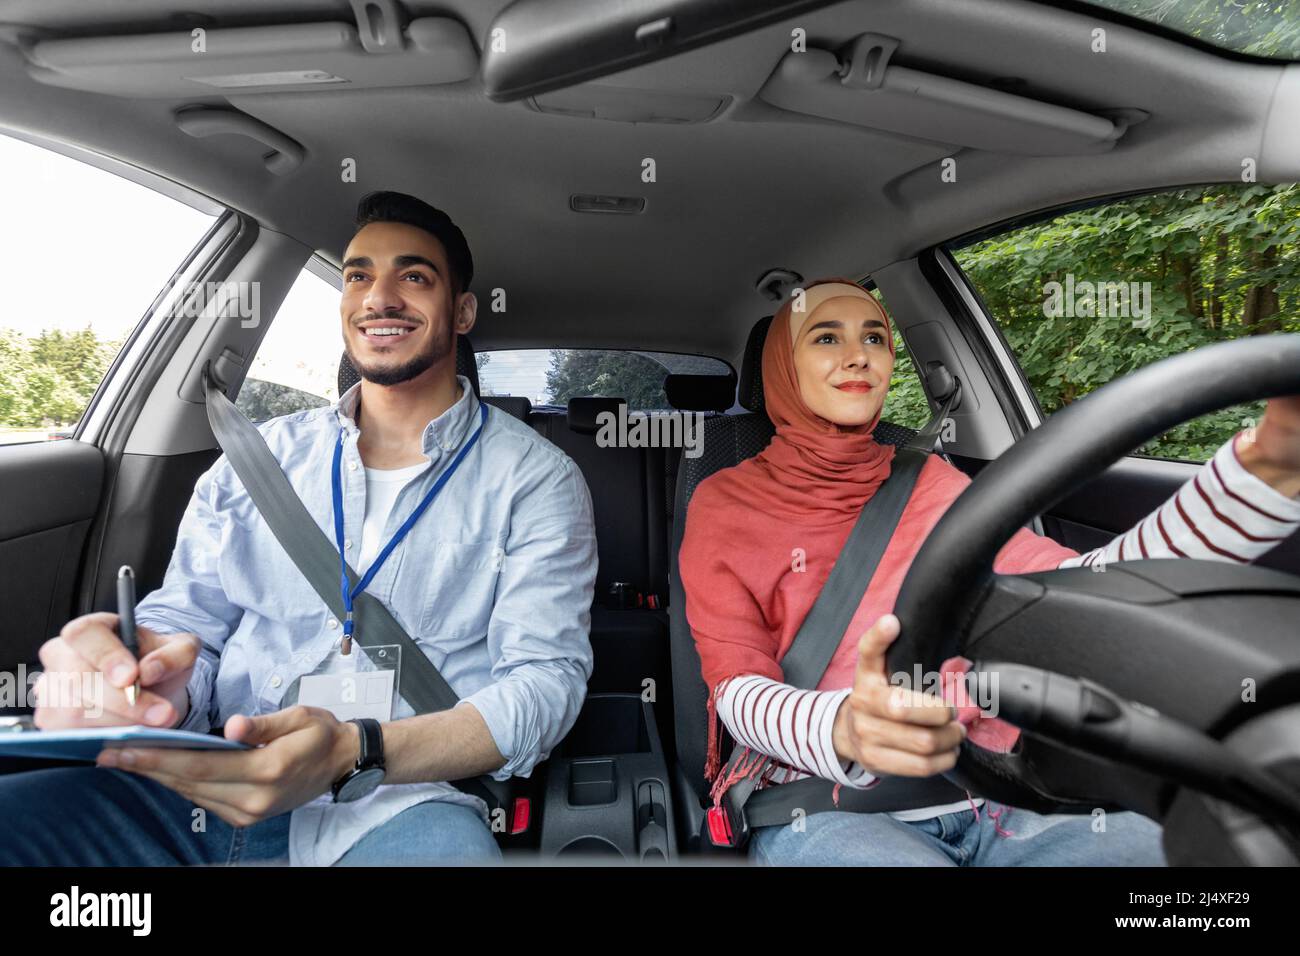 Sorridente donna araba millenaria in hijab che prende la prova di guida con l'uomo mentore, signora al volante guida in auto Foto Stock